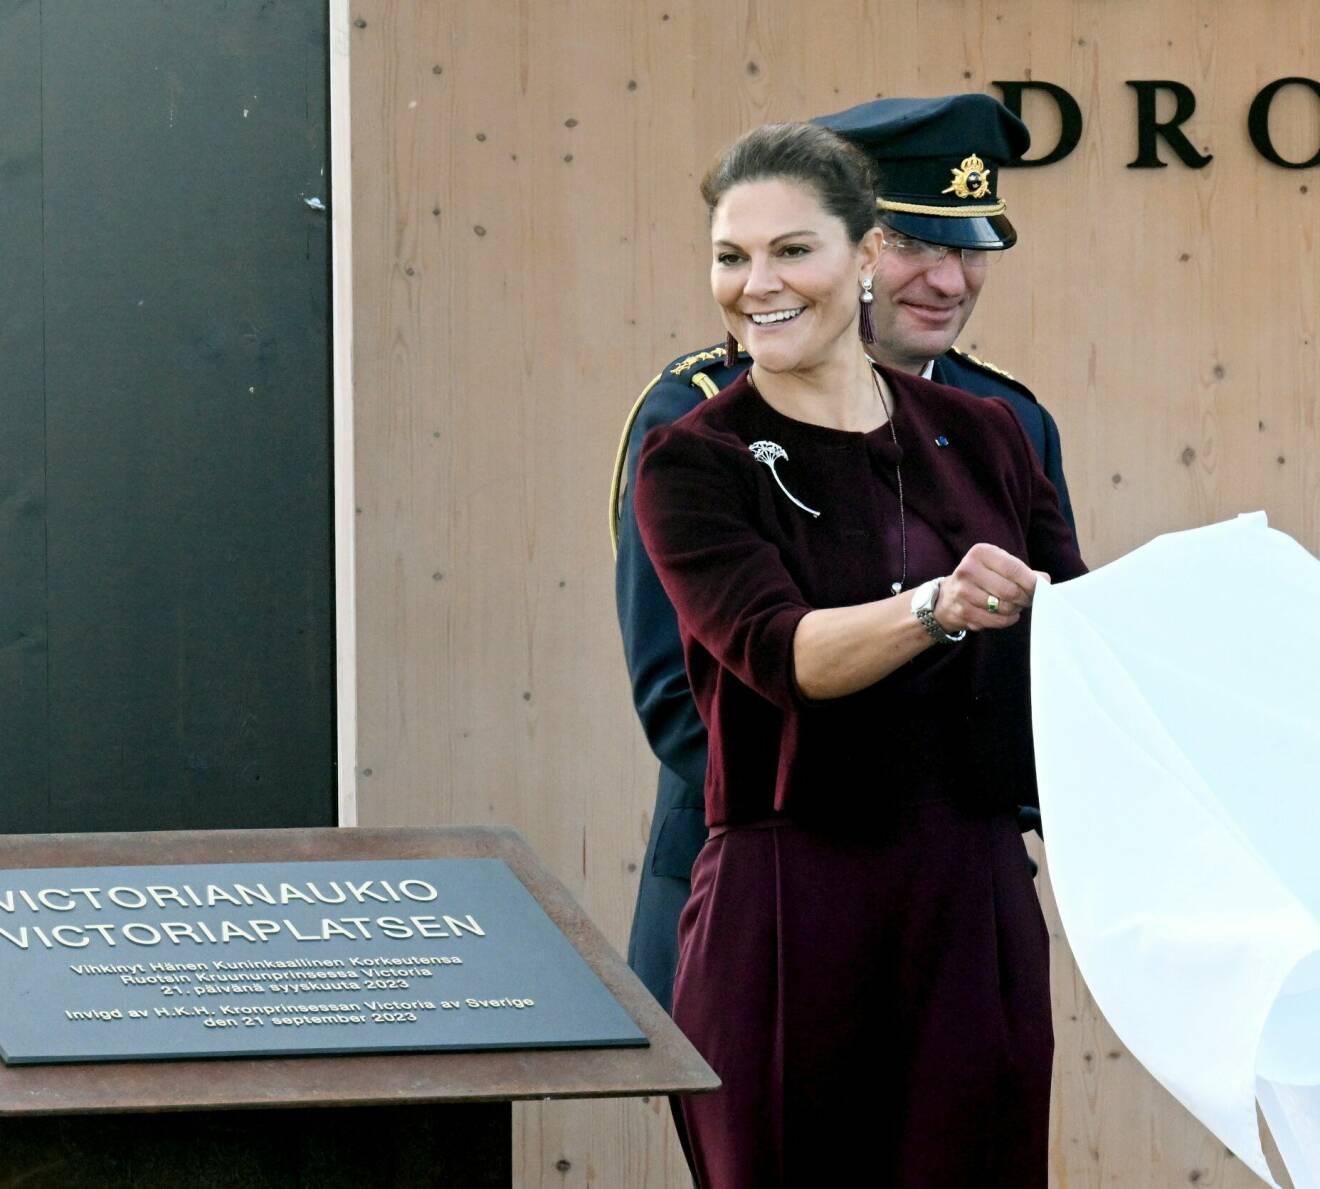 Kronprinsessan Victoria inviger Victoriaplatsen i Lovisa stad